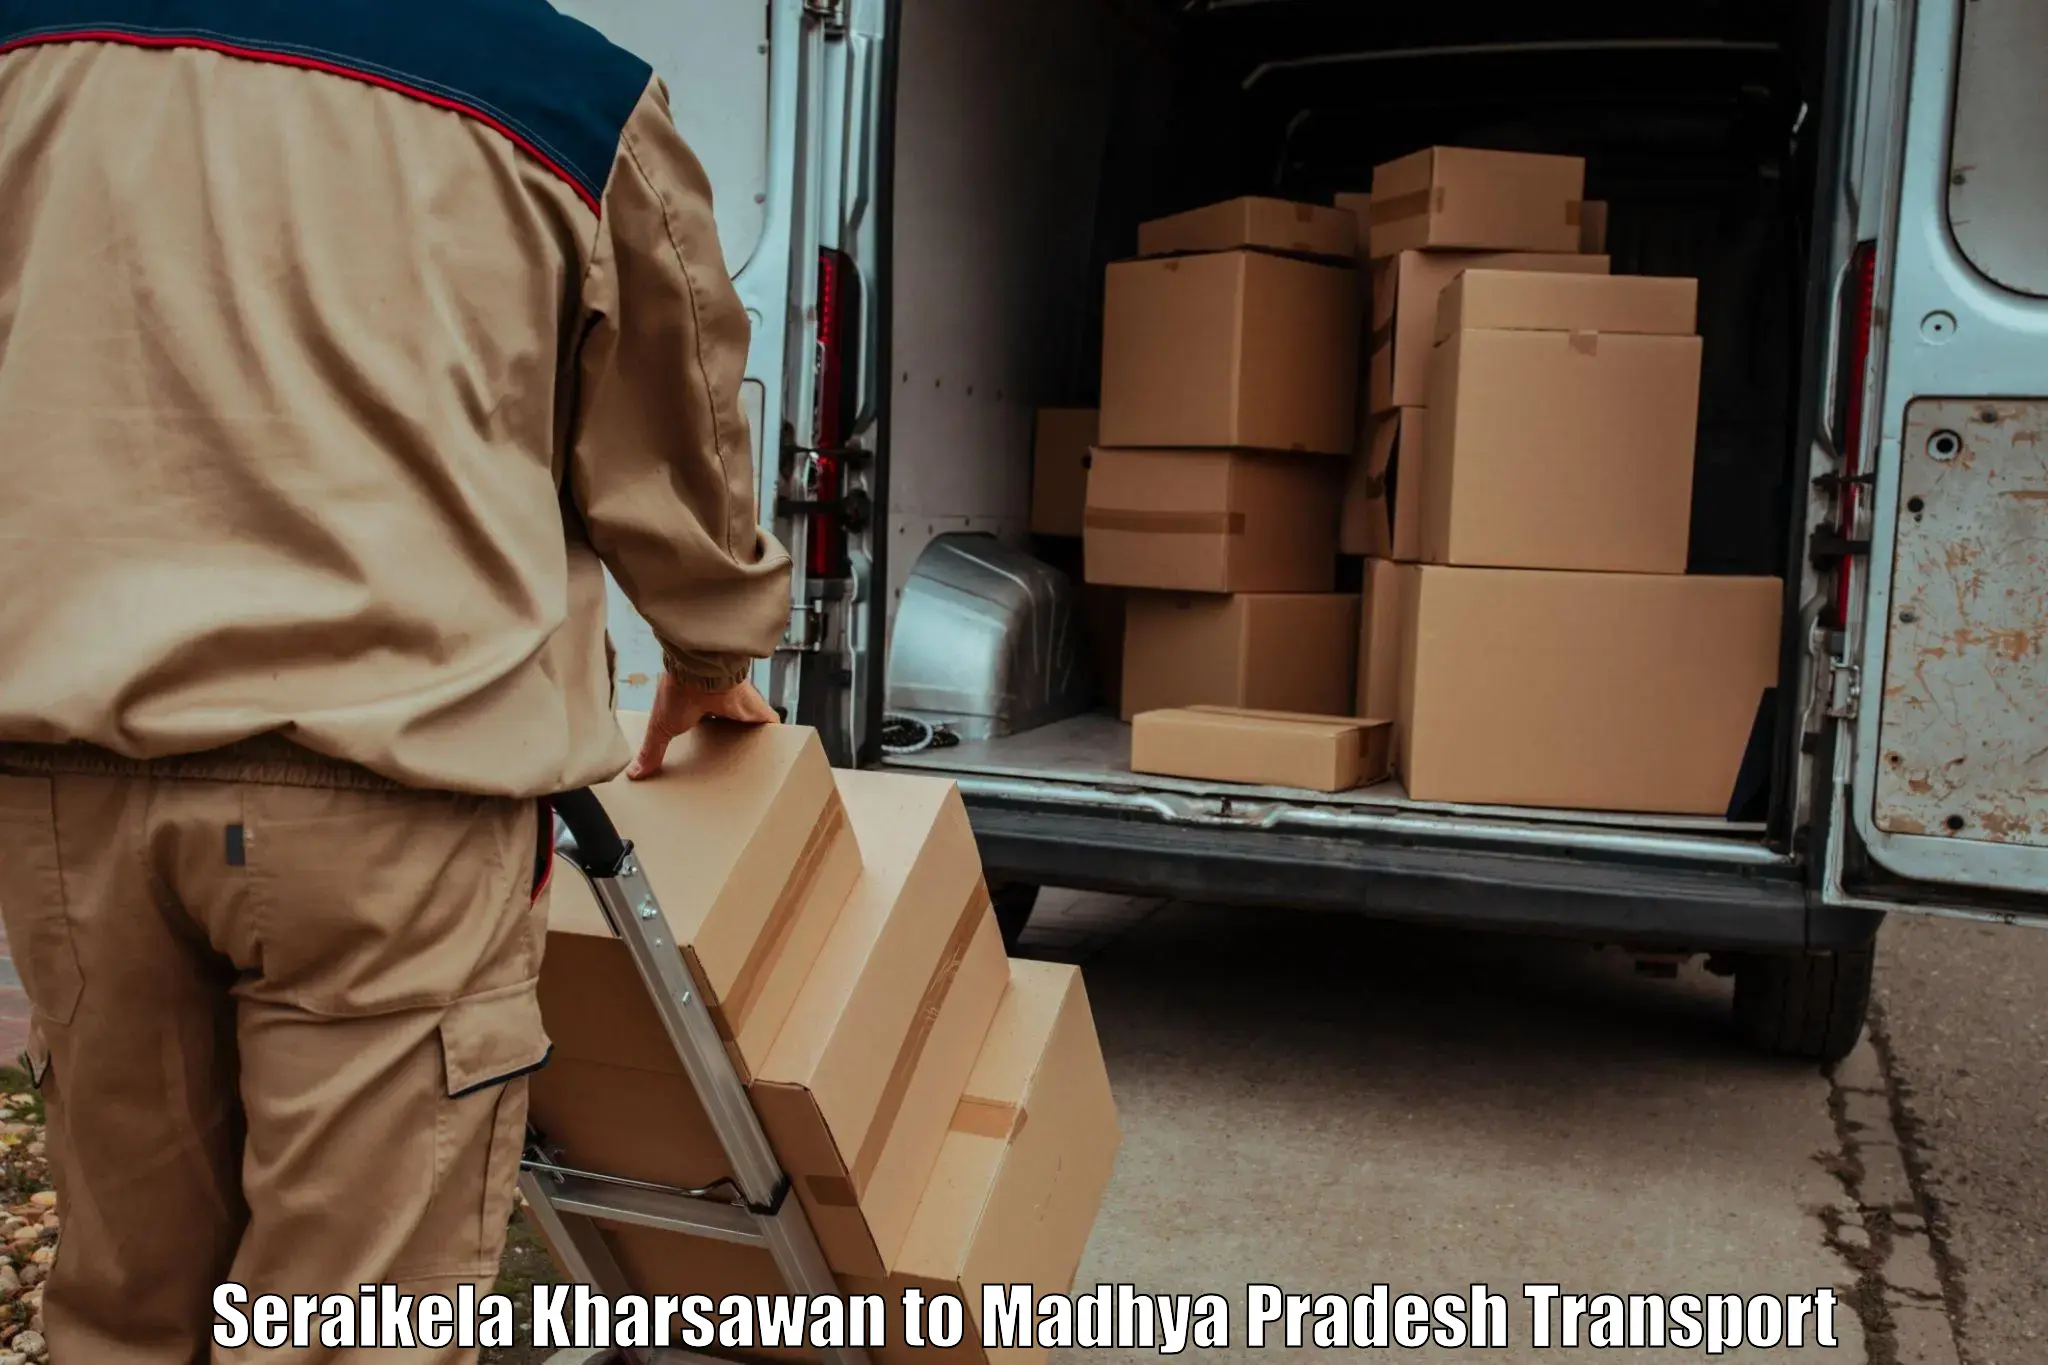 Transport services in Seraikela Kharsawan to Deosar